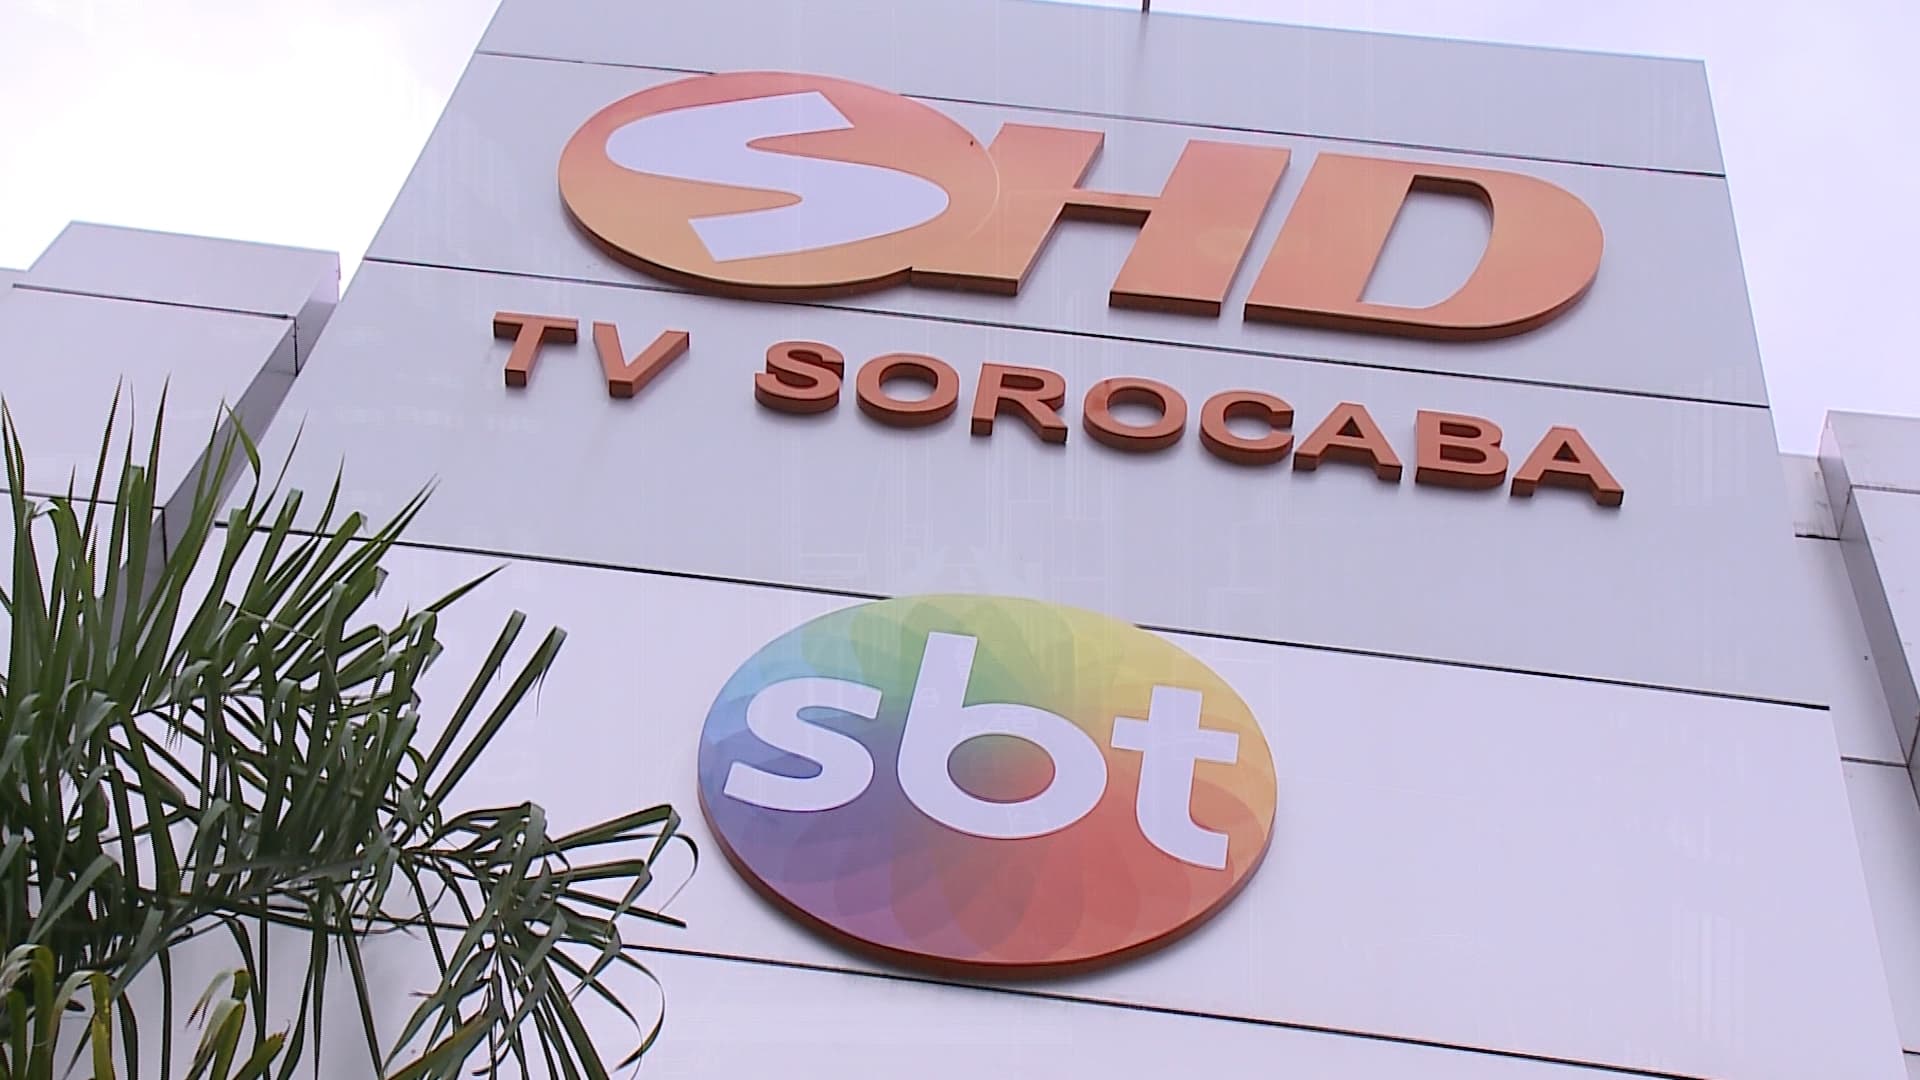 TV Sorocaba SBT completa 33 anos de história na comunicação regional